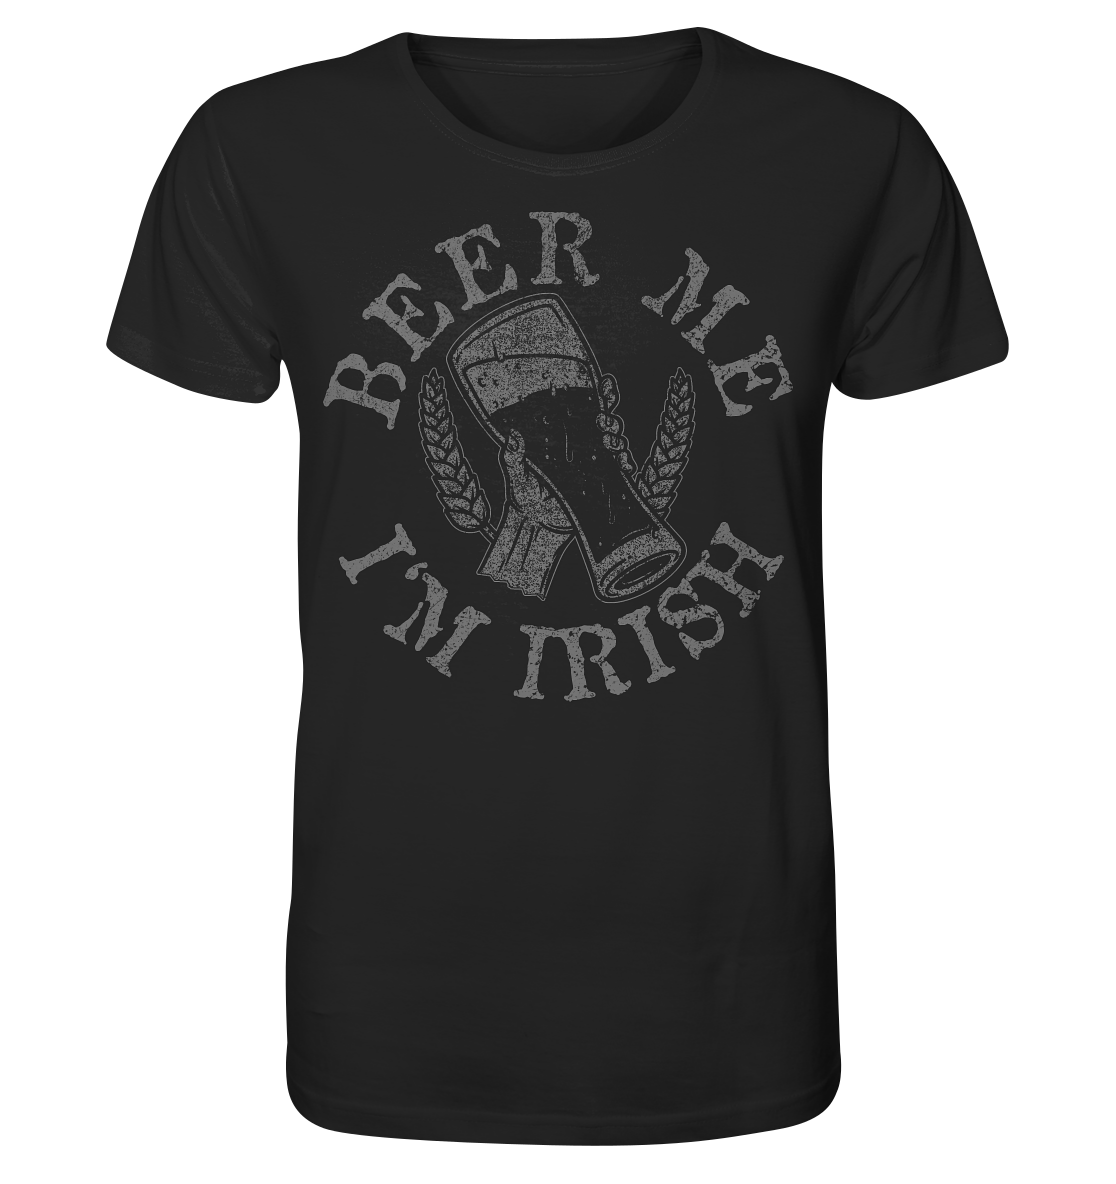 Beer Me "I'm Irish" - Organic Shirt